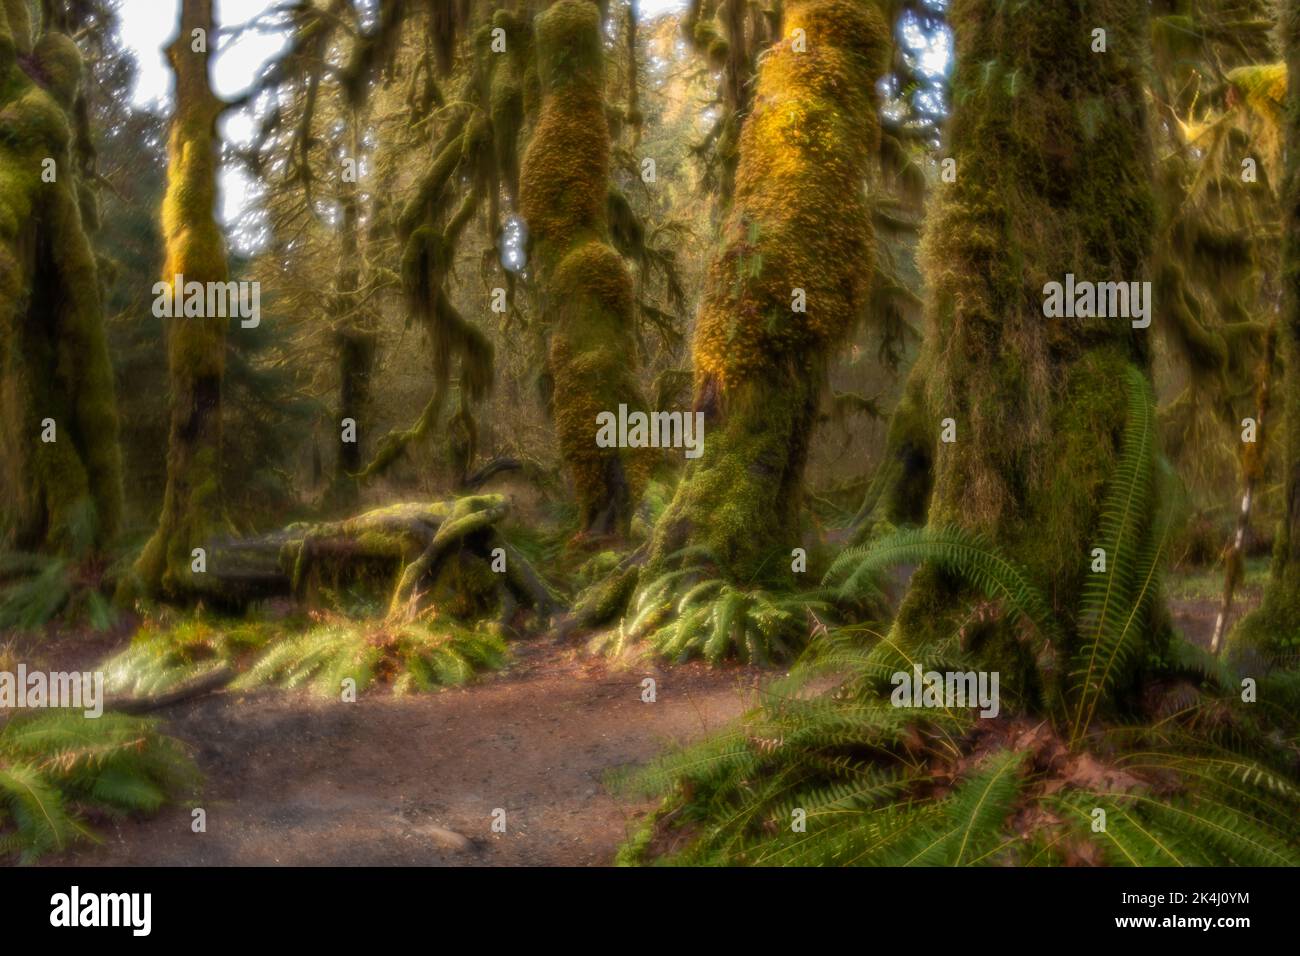 WA22131-00...WASHINGTON - regard Misty de la forêt tropicale de Hoh depuis le sentier Hall of Mosses dans le parc national olympique. Photographié avec un Lensbaby Velve Banque D'Images